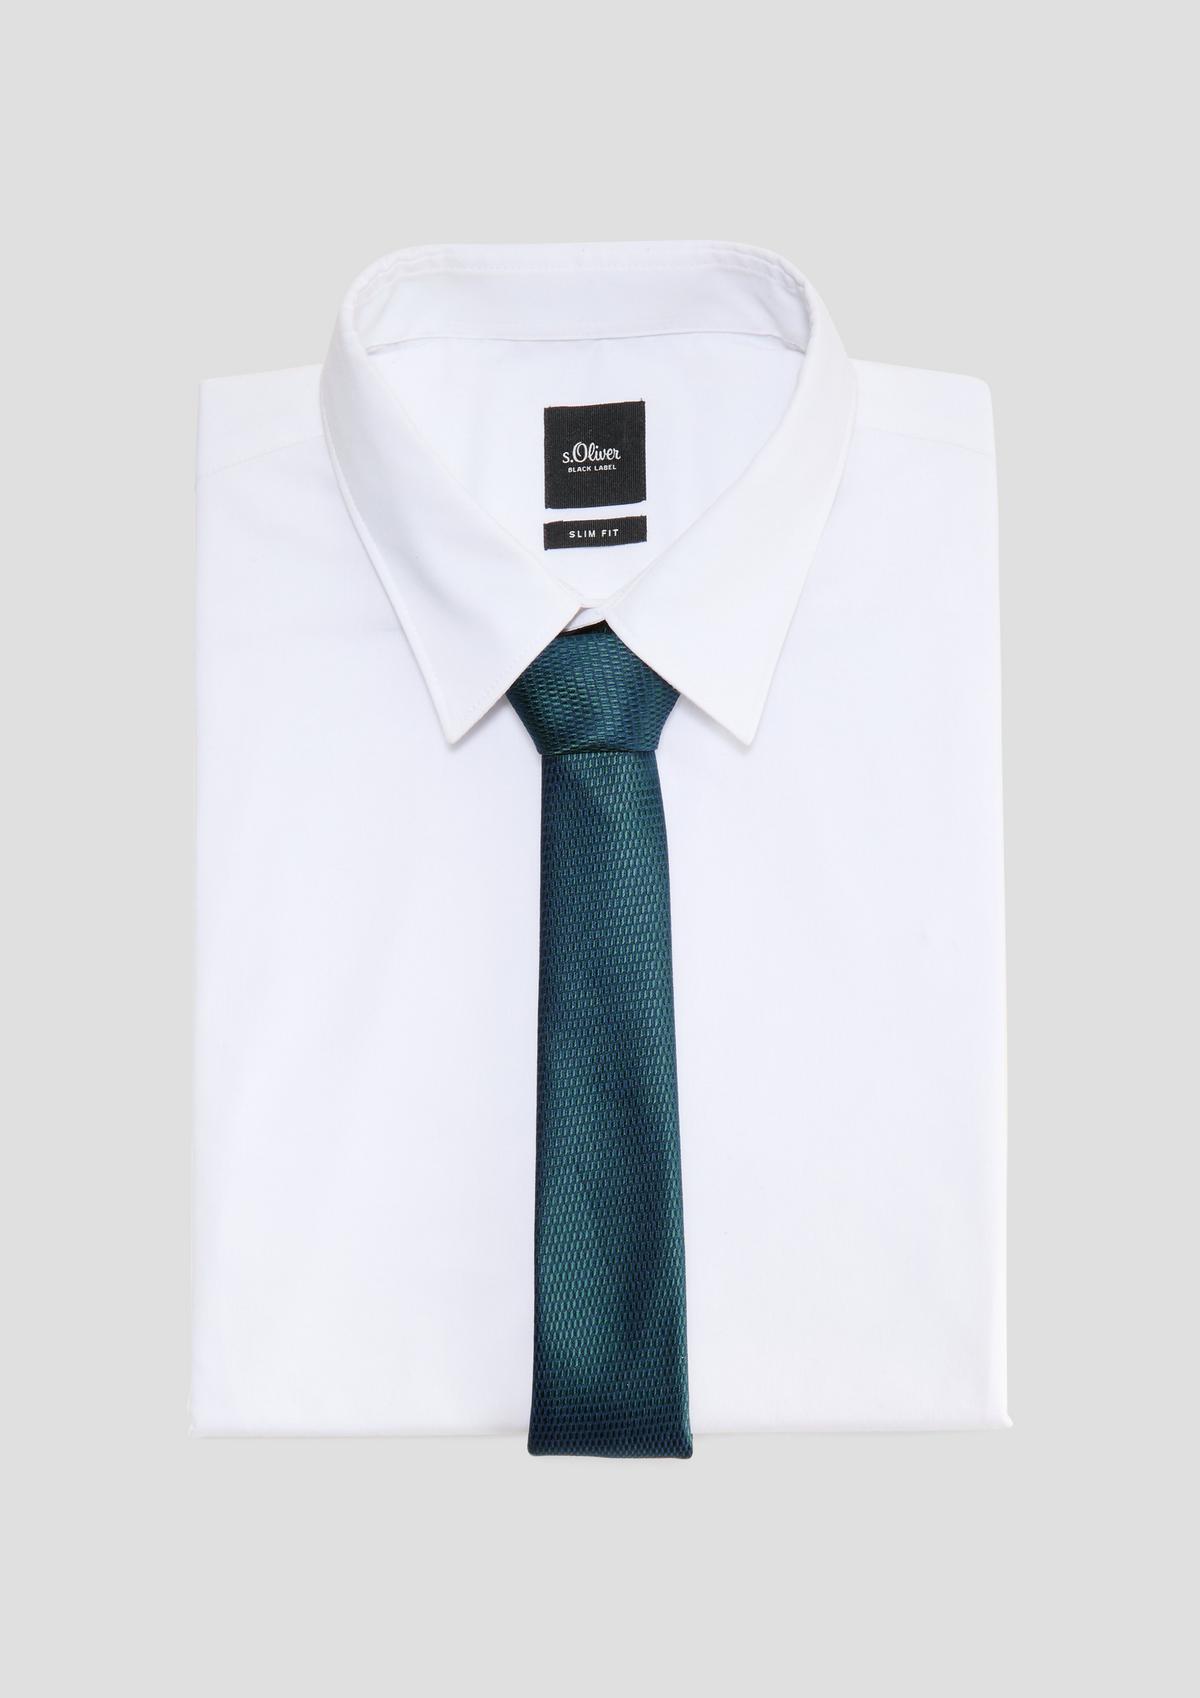 s.Oliver Silk blend tie